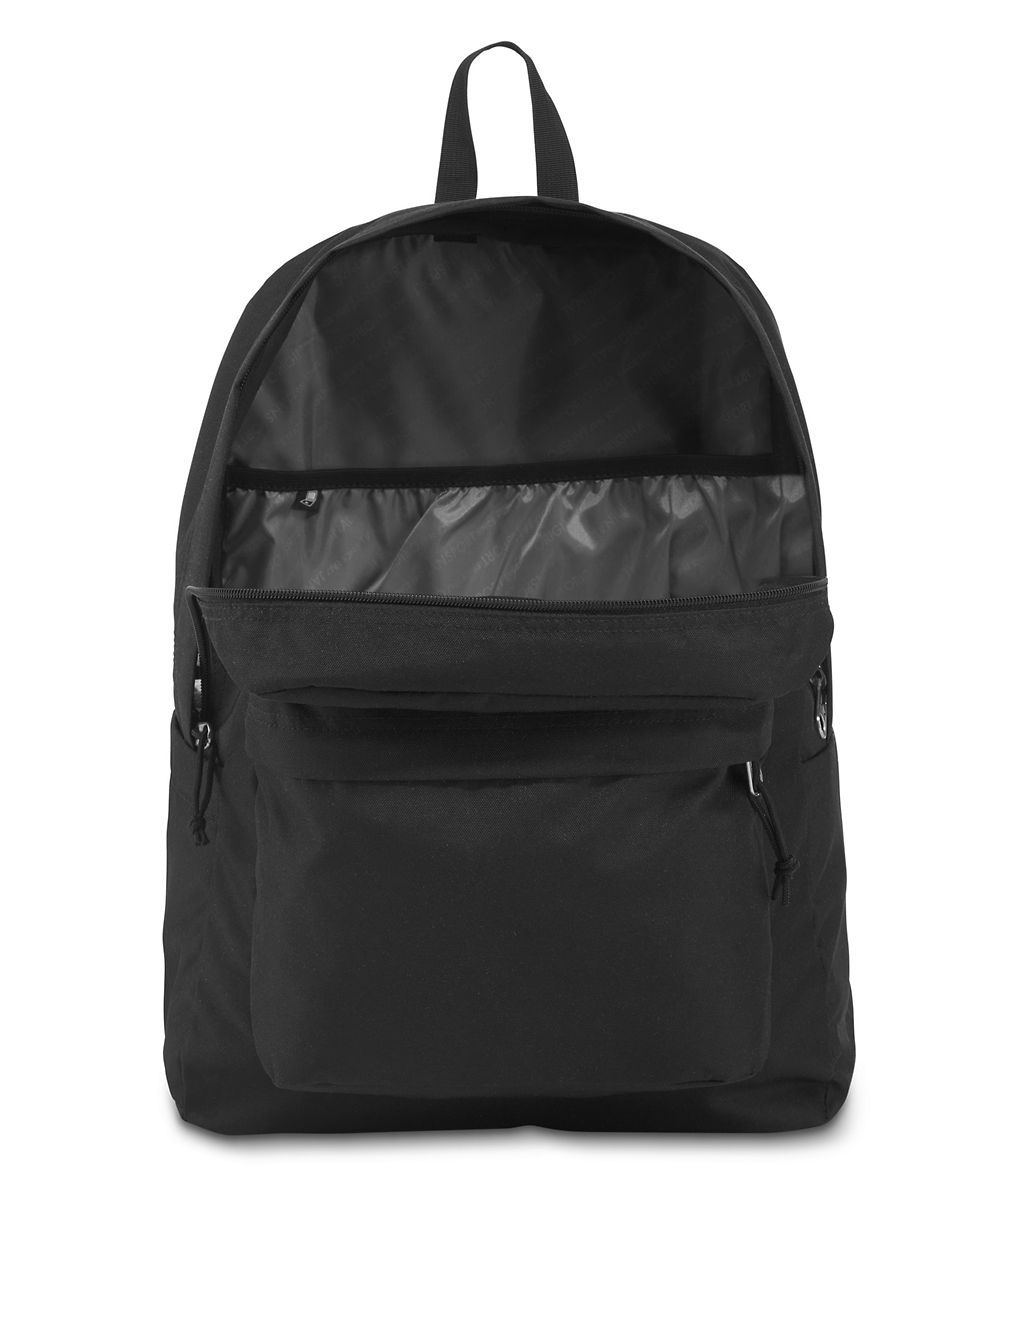 SuperBreak Plus Backpack 7 of 8